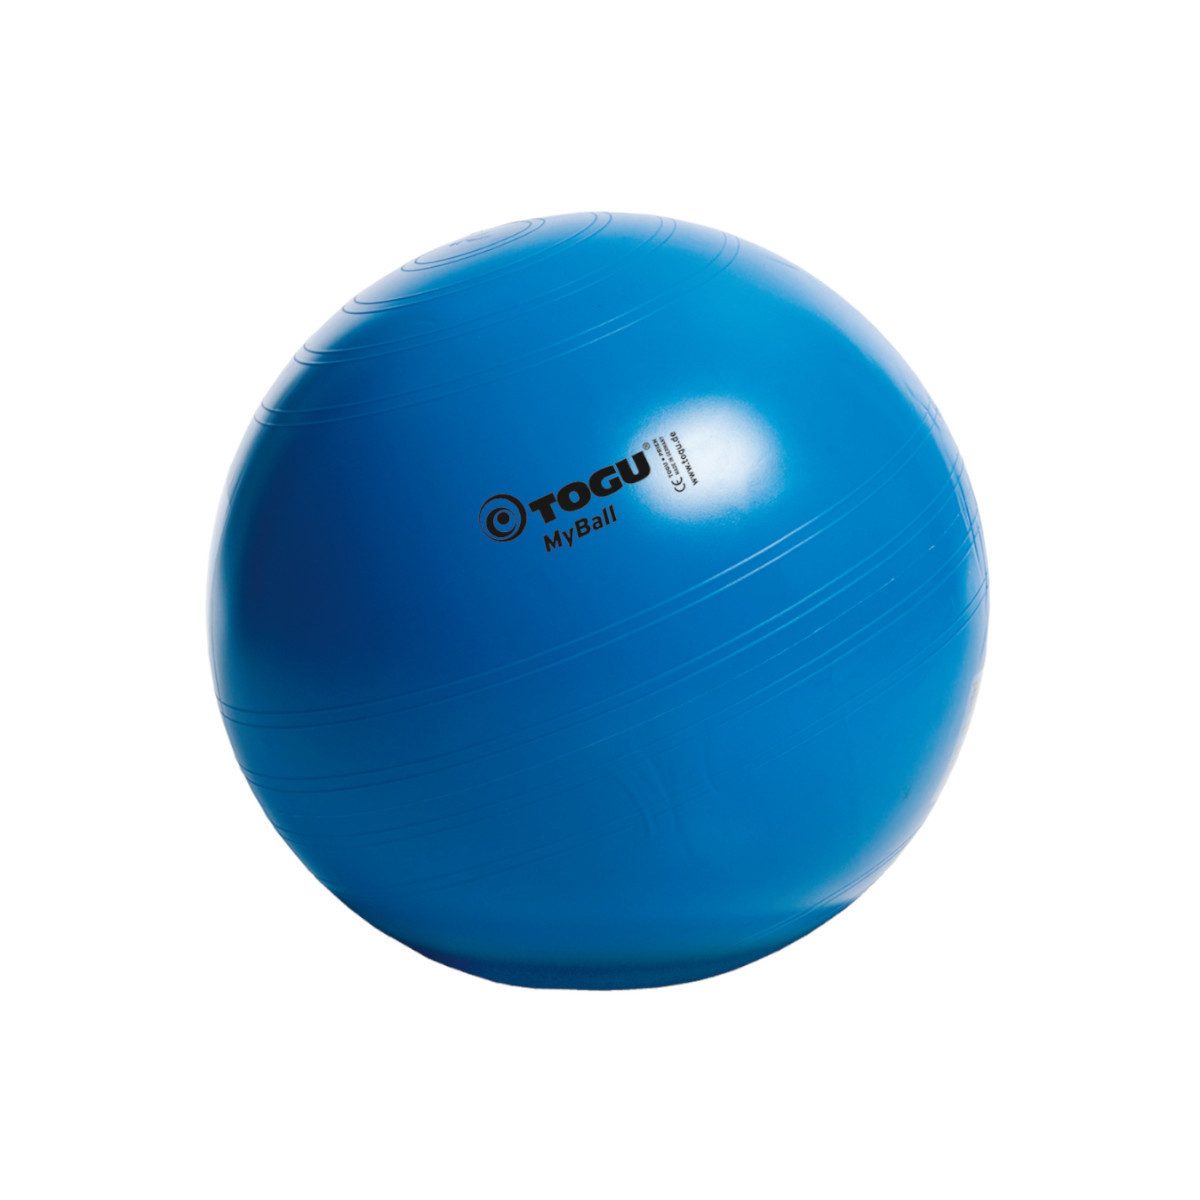 Gymnastikball 45 cm, blau